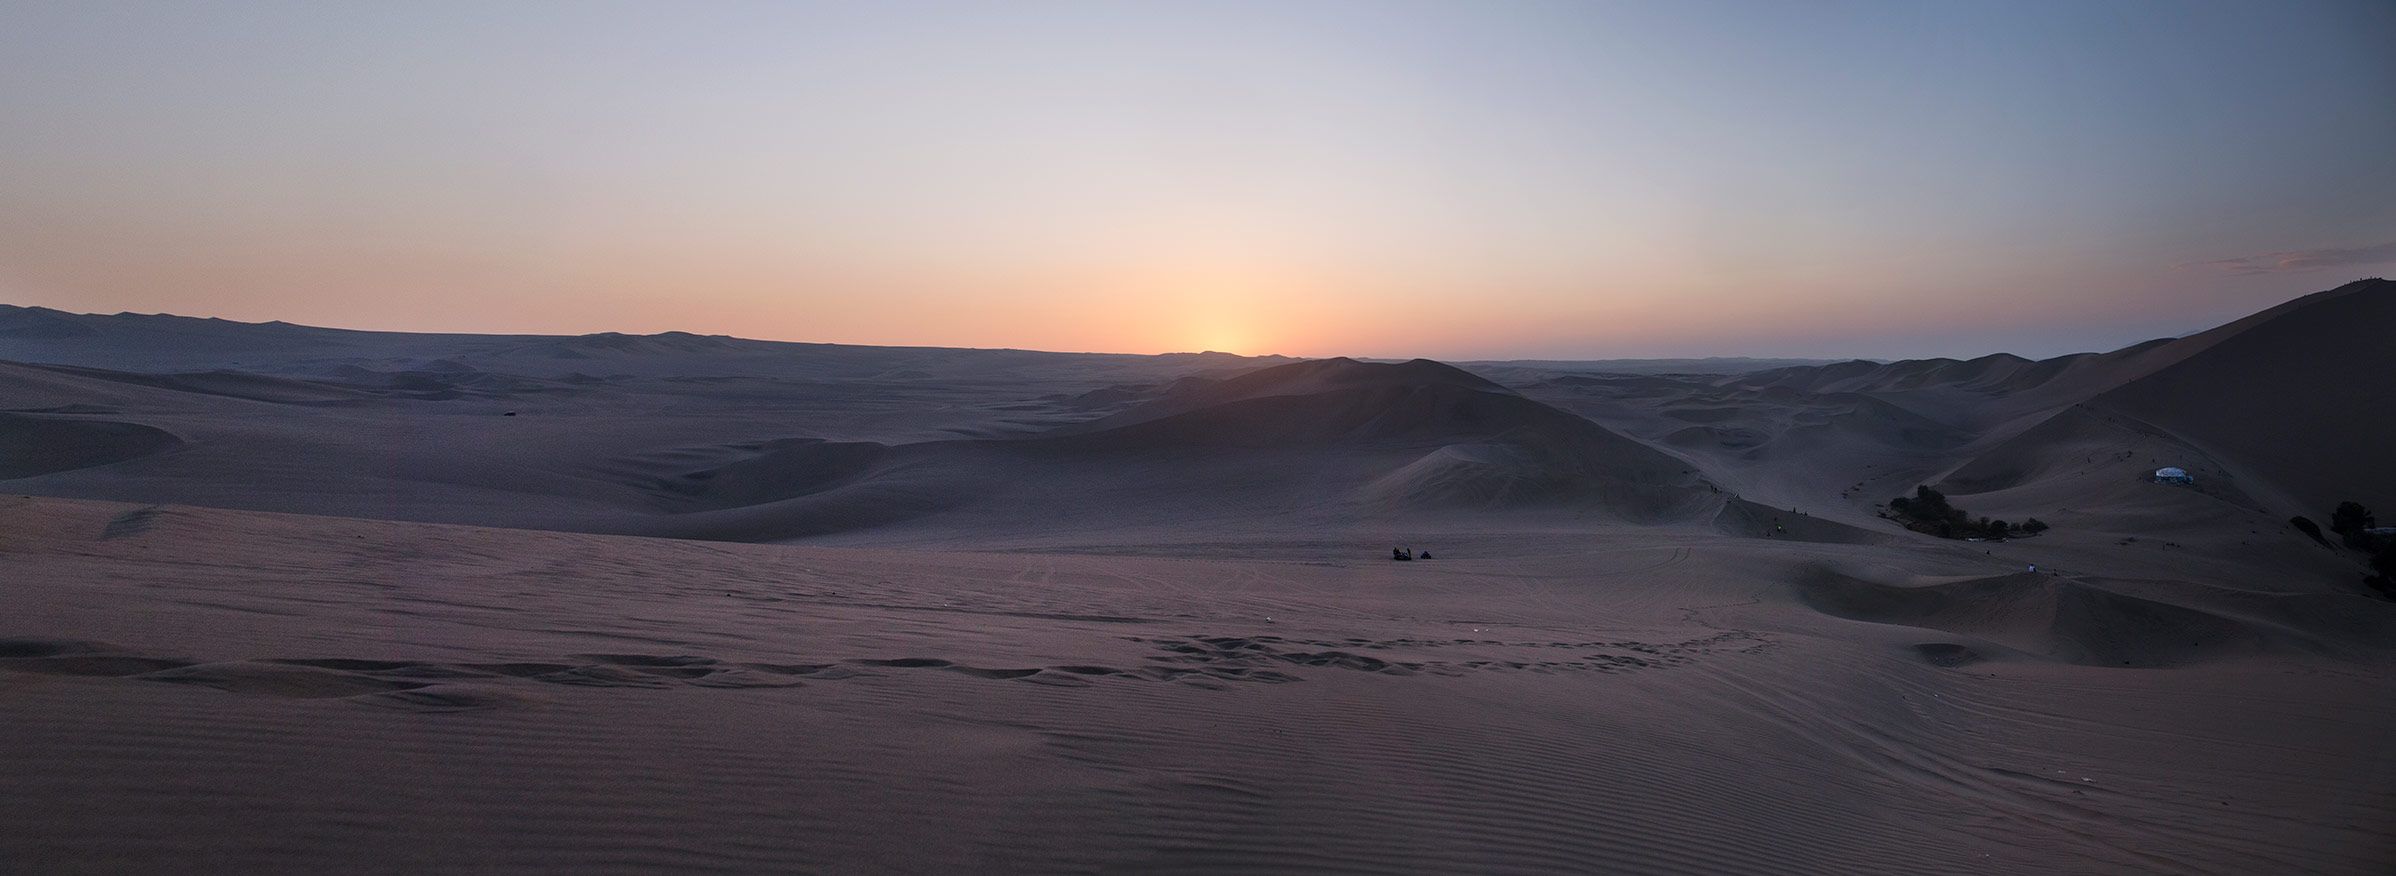 desierto-ica-anochecer